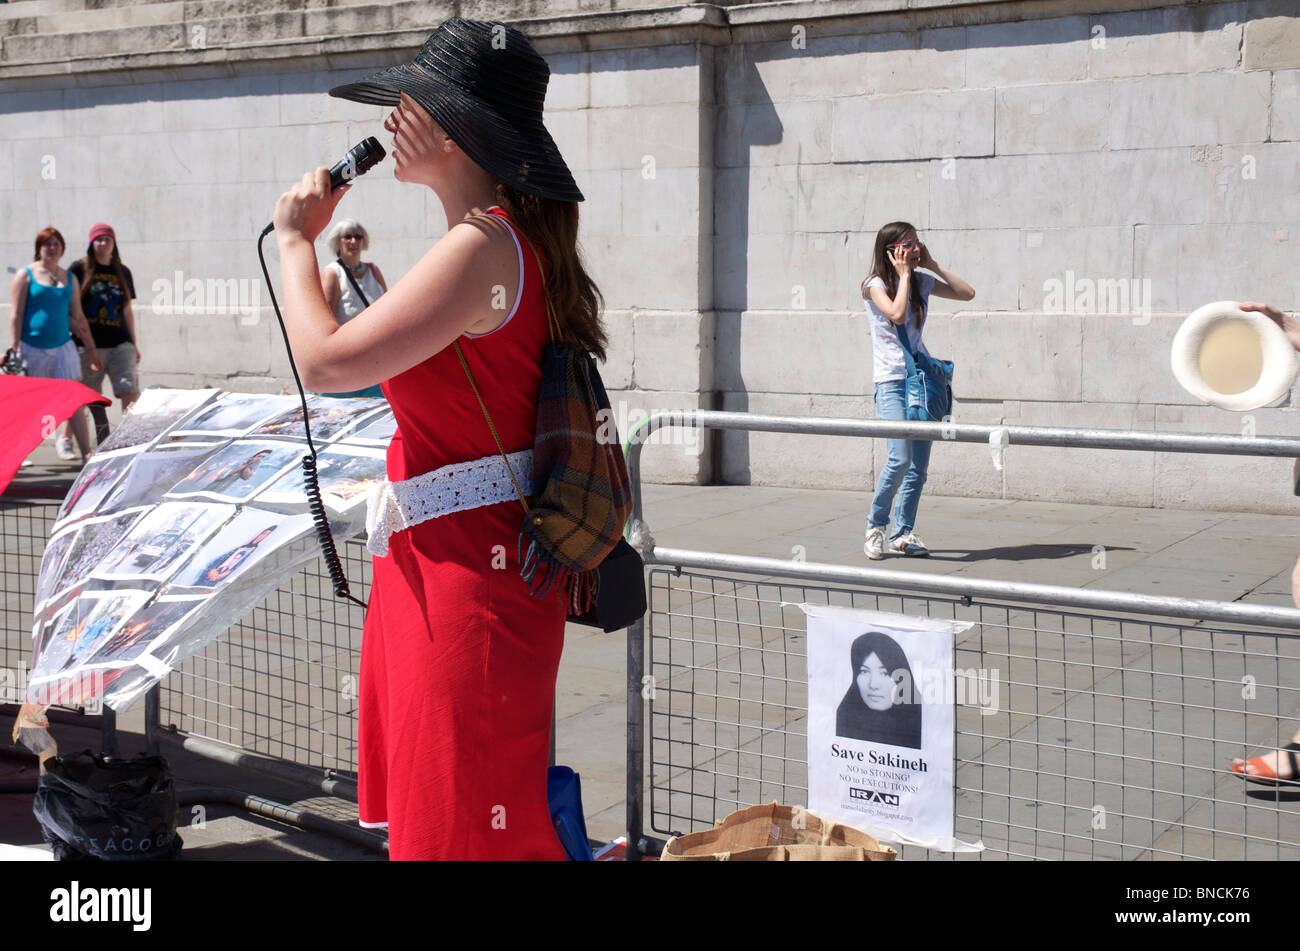 Manifestation à Trafalgar Square pour arrêter l'exécution de Sakineh accusés d'adultère et condamnée à la lapidation à mort Banque D'Images